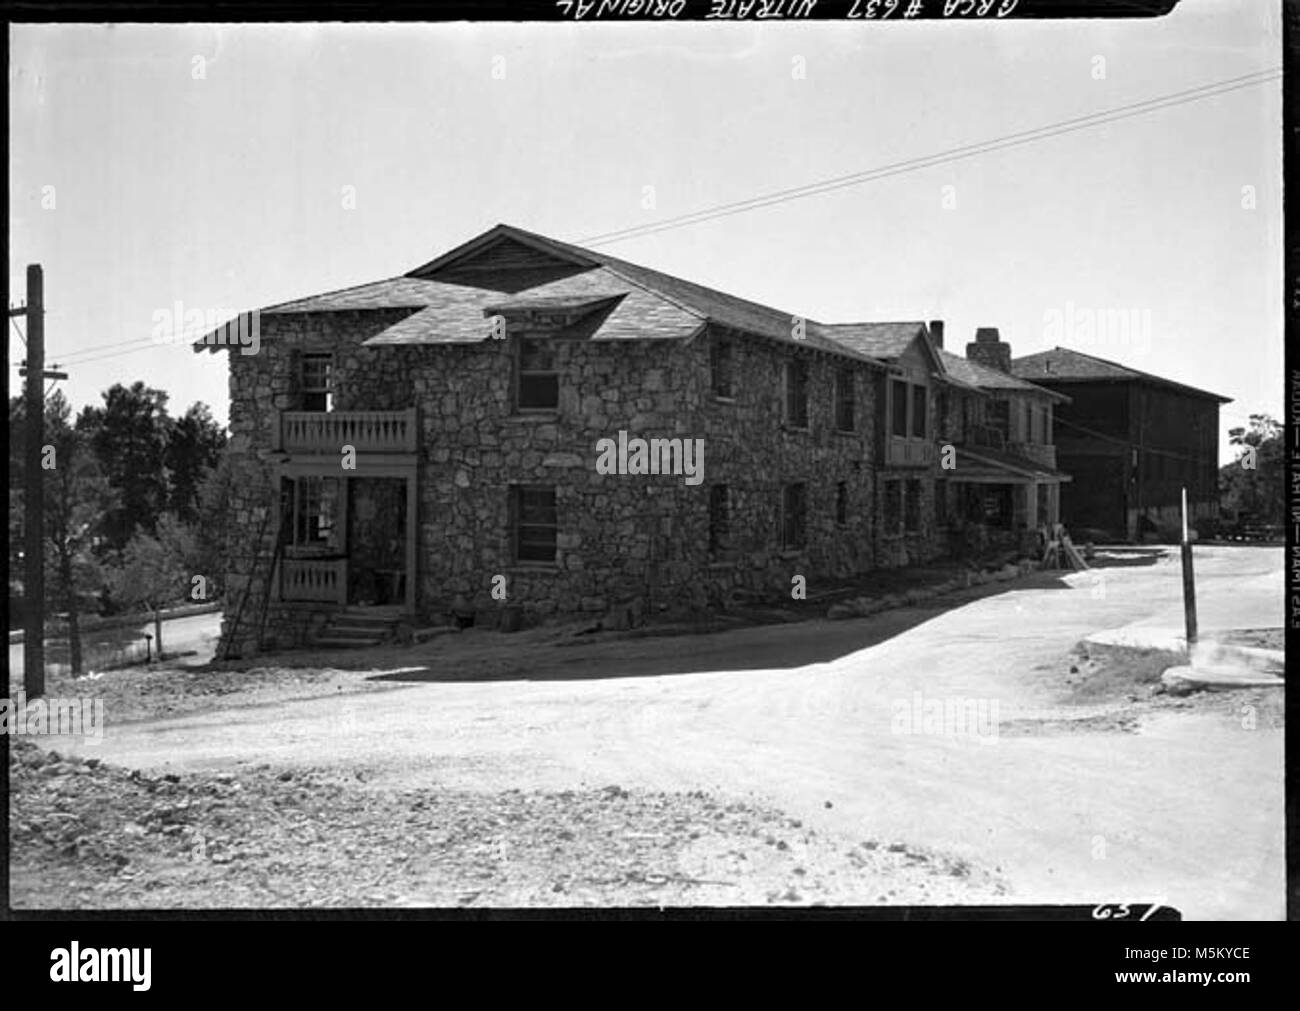 Grand Canyon historischen Coulter Hall Schlafsaal Bau. FRED HARVEY CO. FRAUEN MITARBEITER SCHLAFSAAL, COULTER HALLE - entworfen von Mary Colter. Bau kurz vor dem Abschluss. 20 Okt 1937 Stockfoto